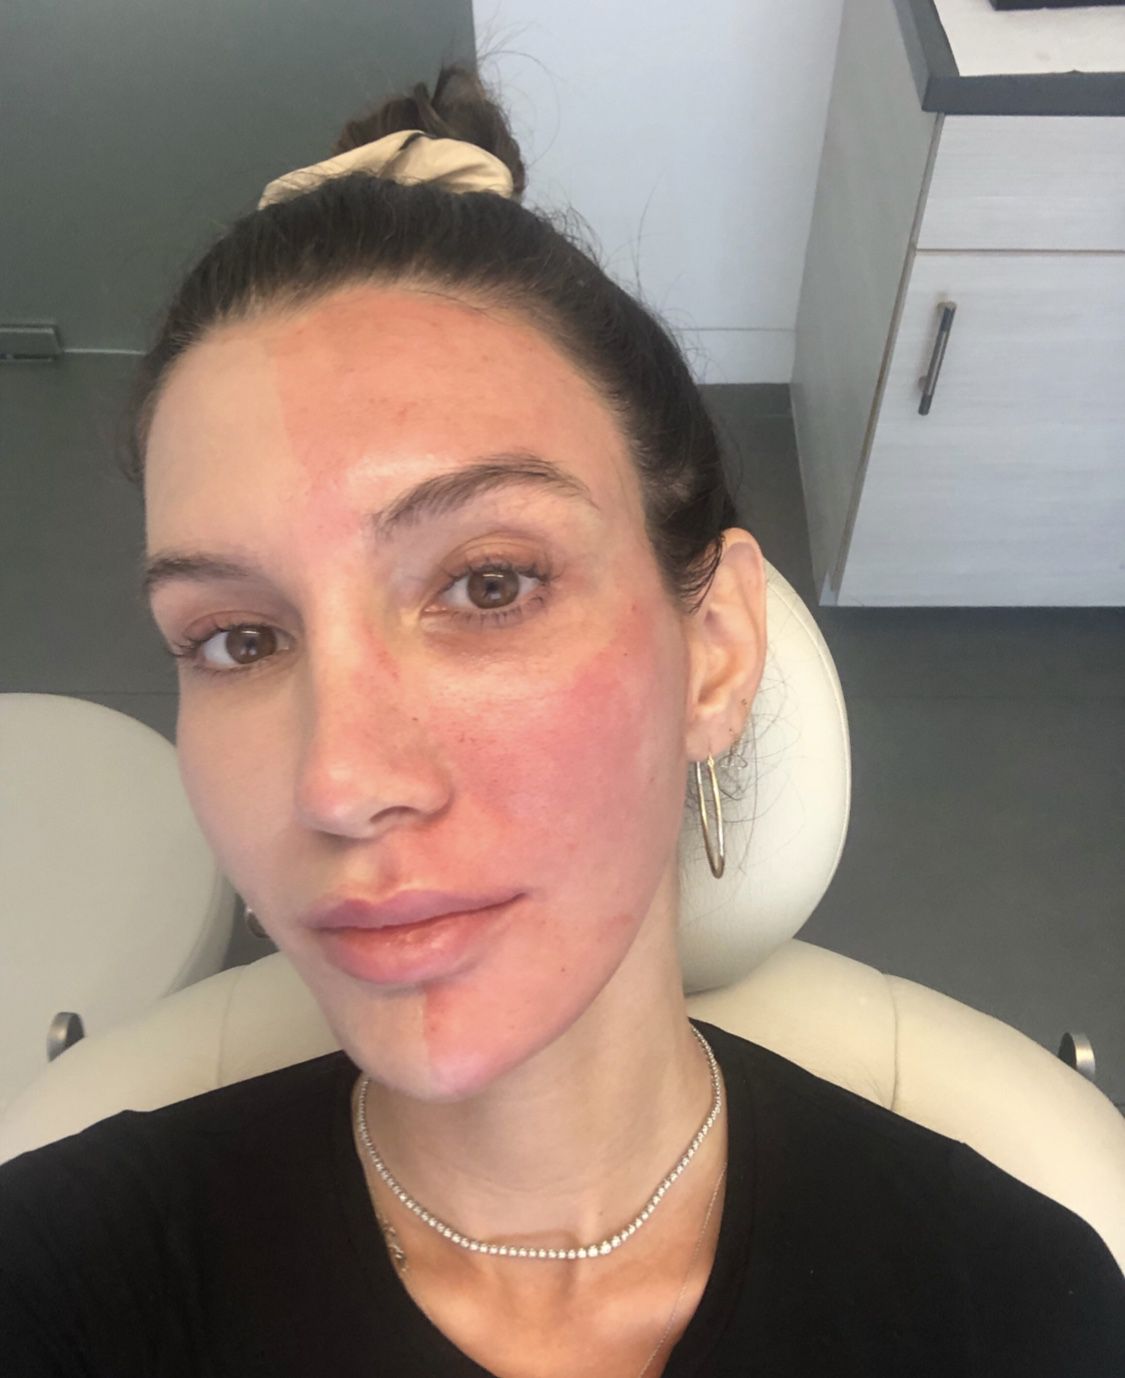 Metade do rosto de uma mulher com base oxigenante Oxygenetix durante teste com Tanya Akim